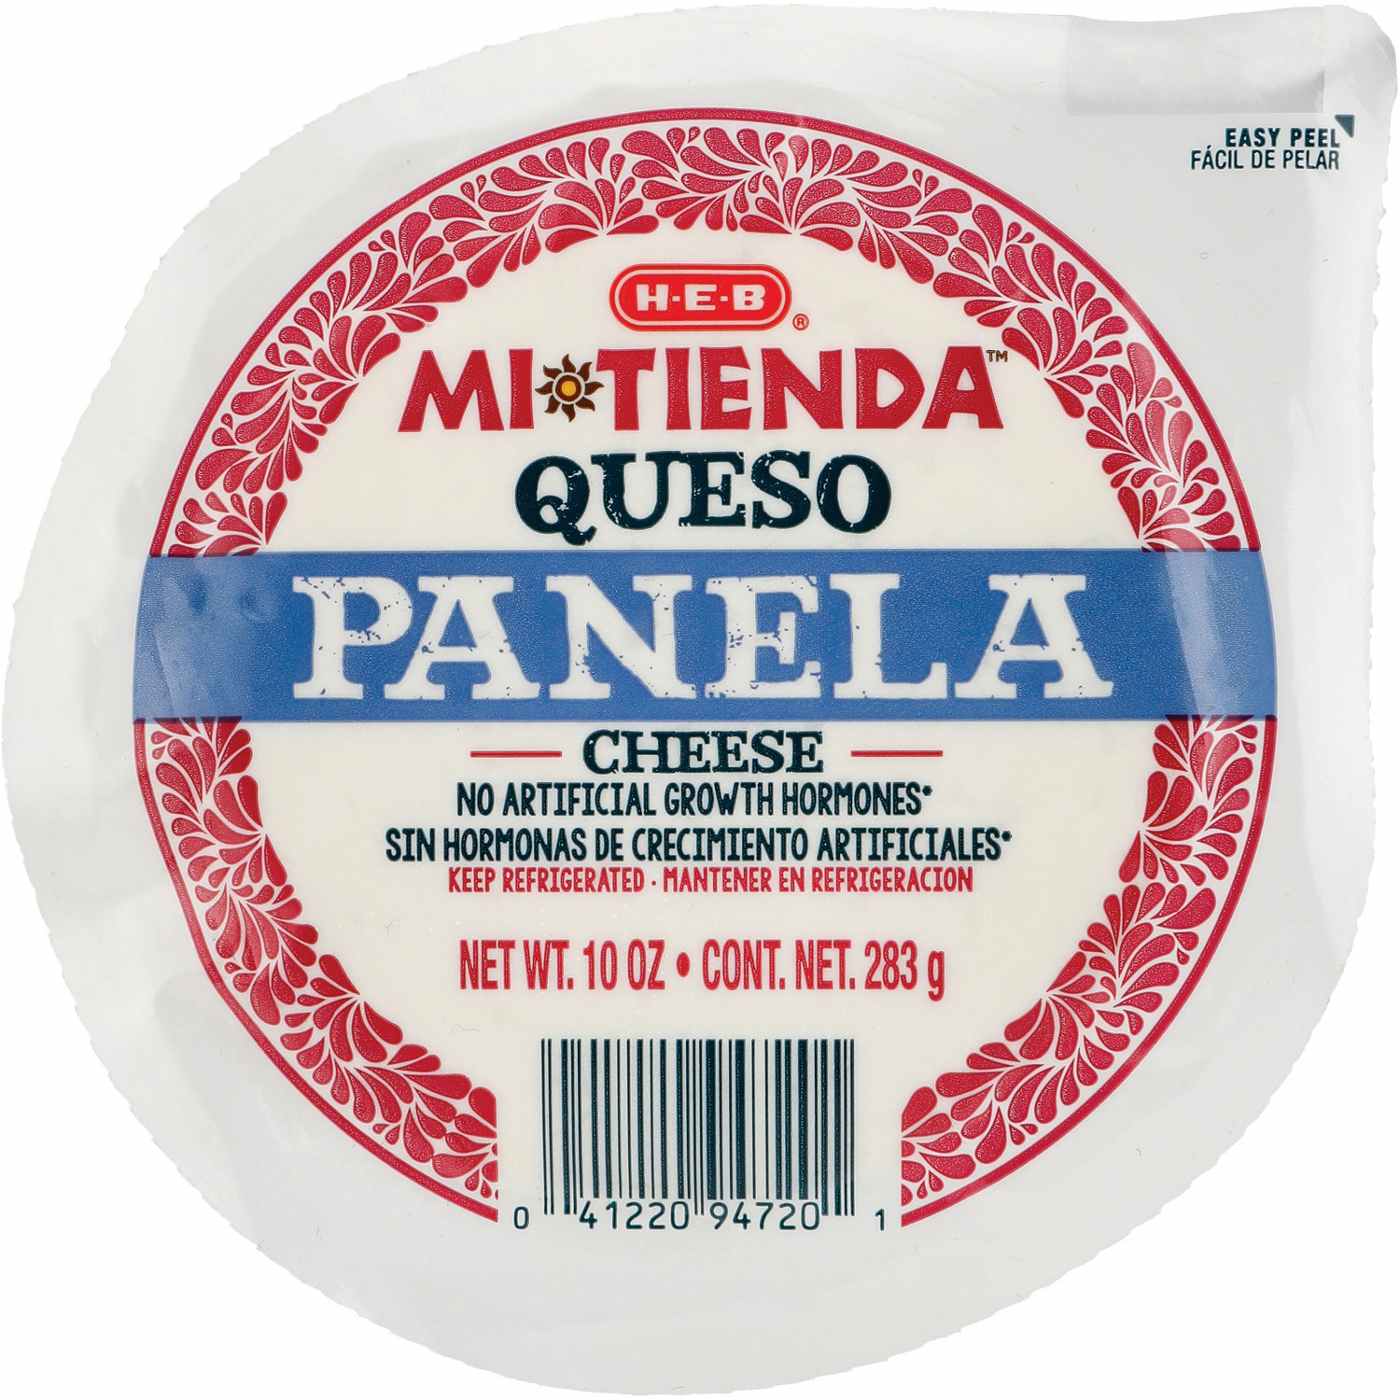 H-E-B Mi Tienda Queso Panela Cheese; image 1 of 3